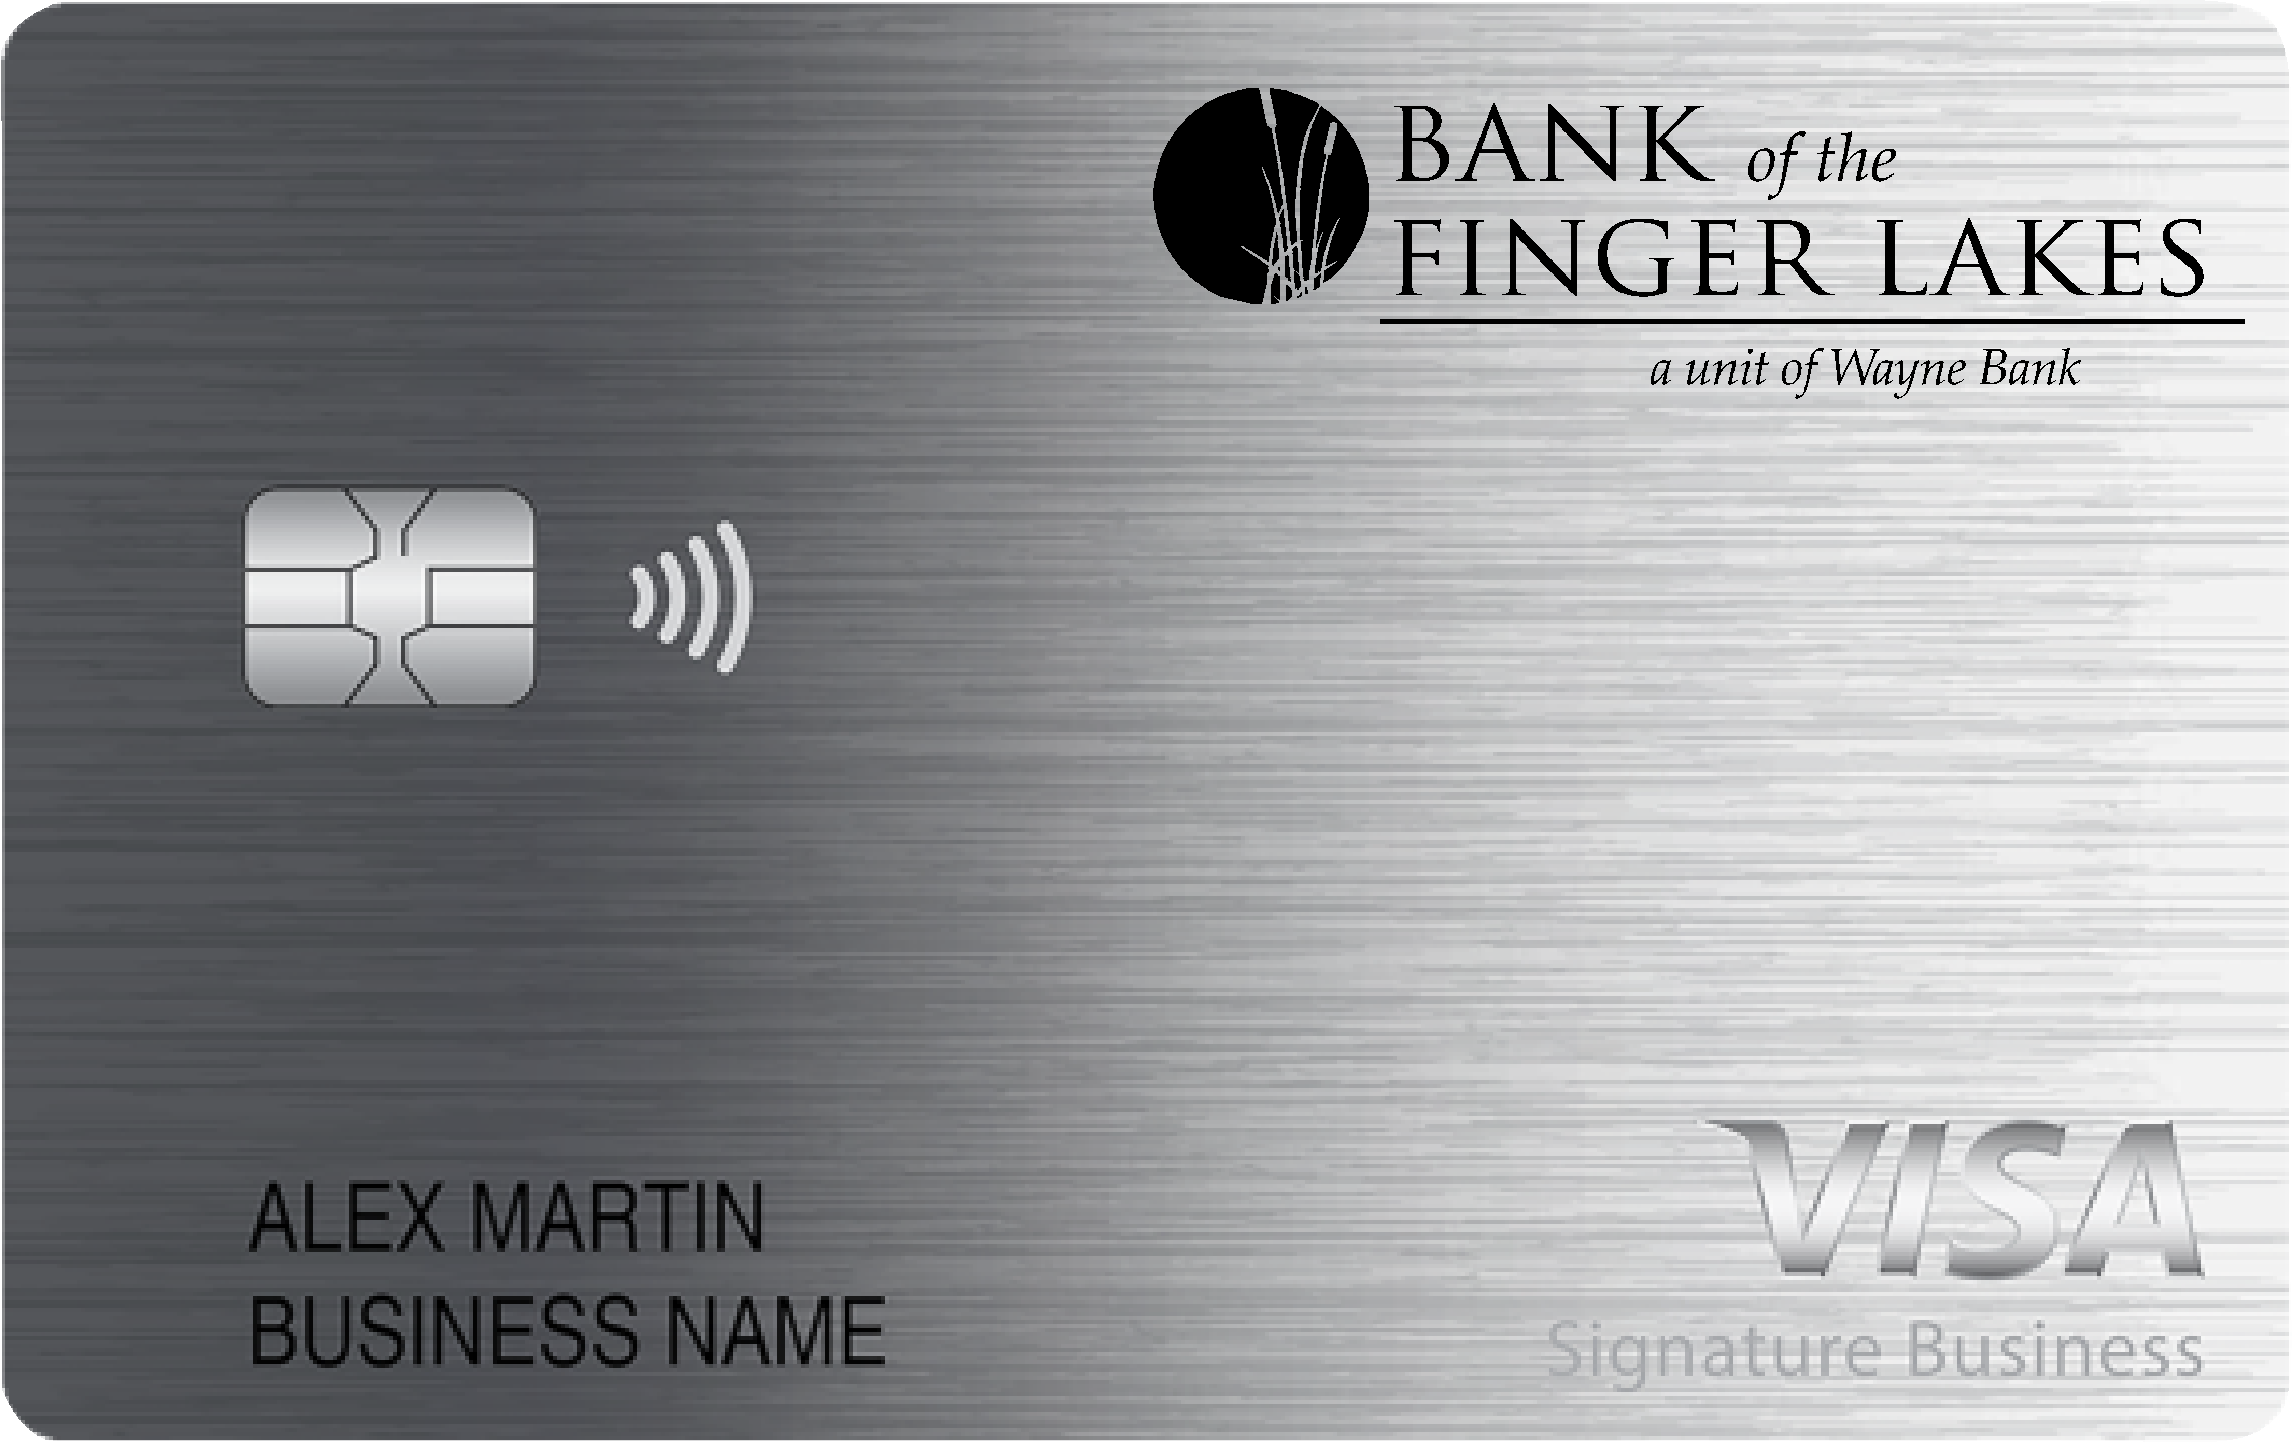 Bank of Finger Lakes Smart Business Rewards Card